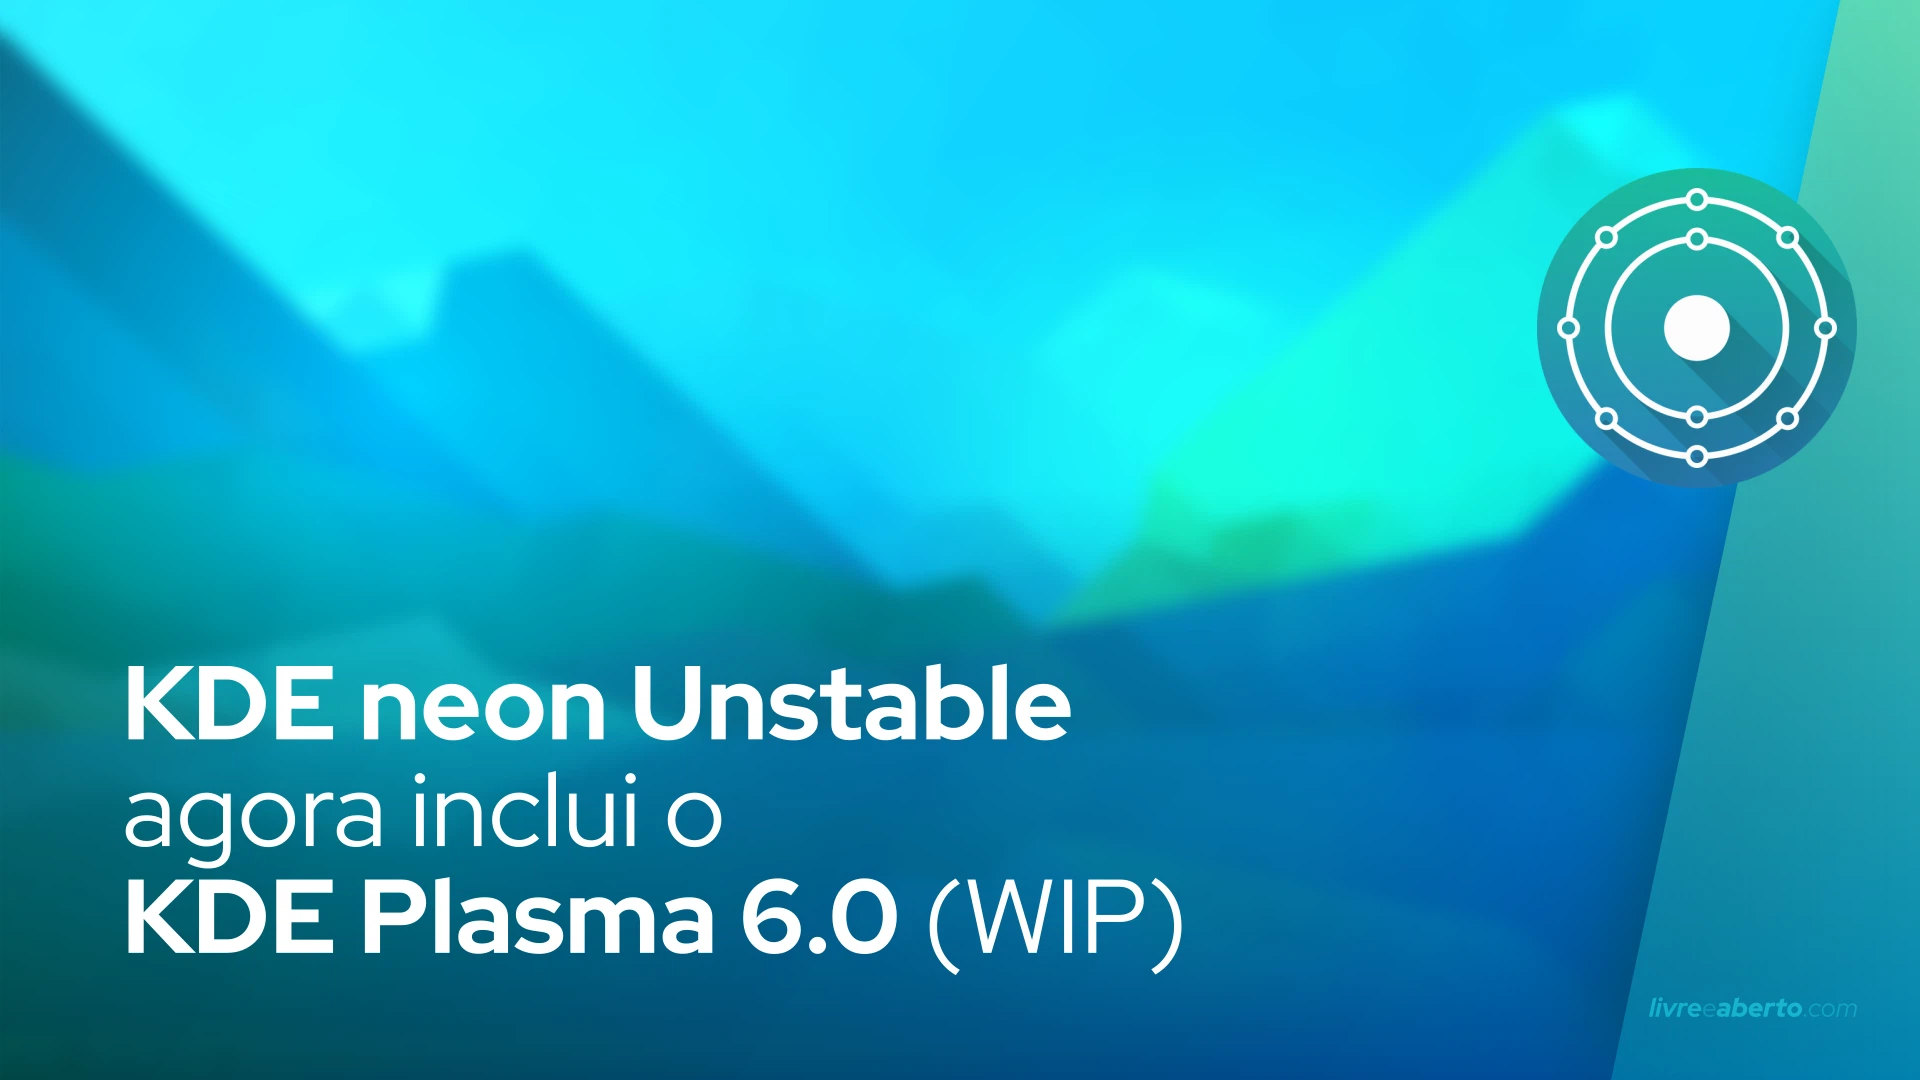 KDE neon Unstable agora inclui o KDE Plasma 6.0 (WIP)